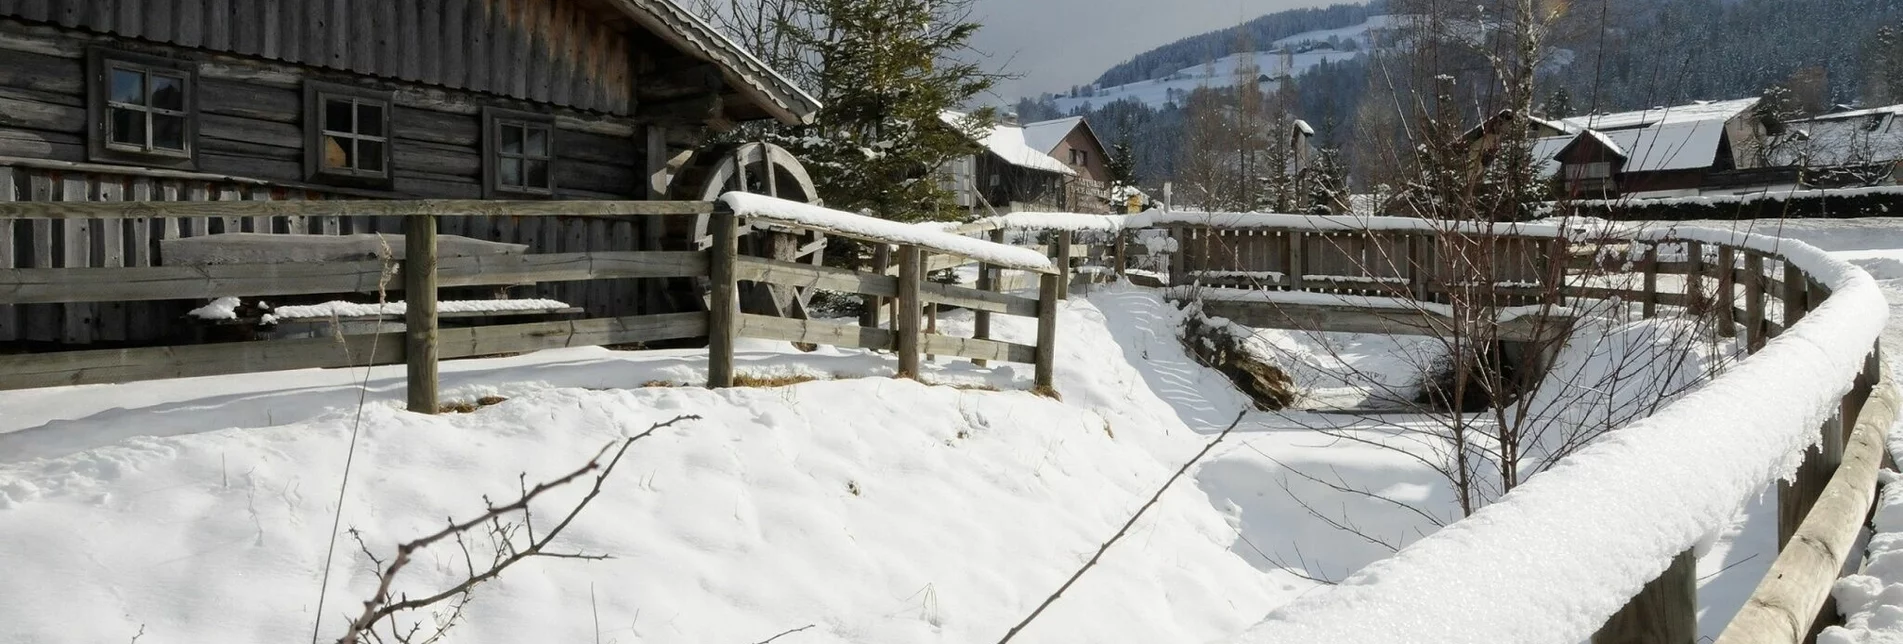 Winterwandern Dörferwanderung im Ennstal - Touren-Impression #1 | © © www.haus.at